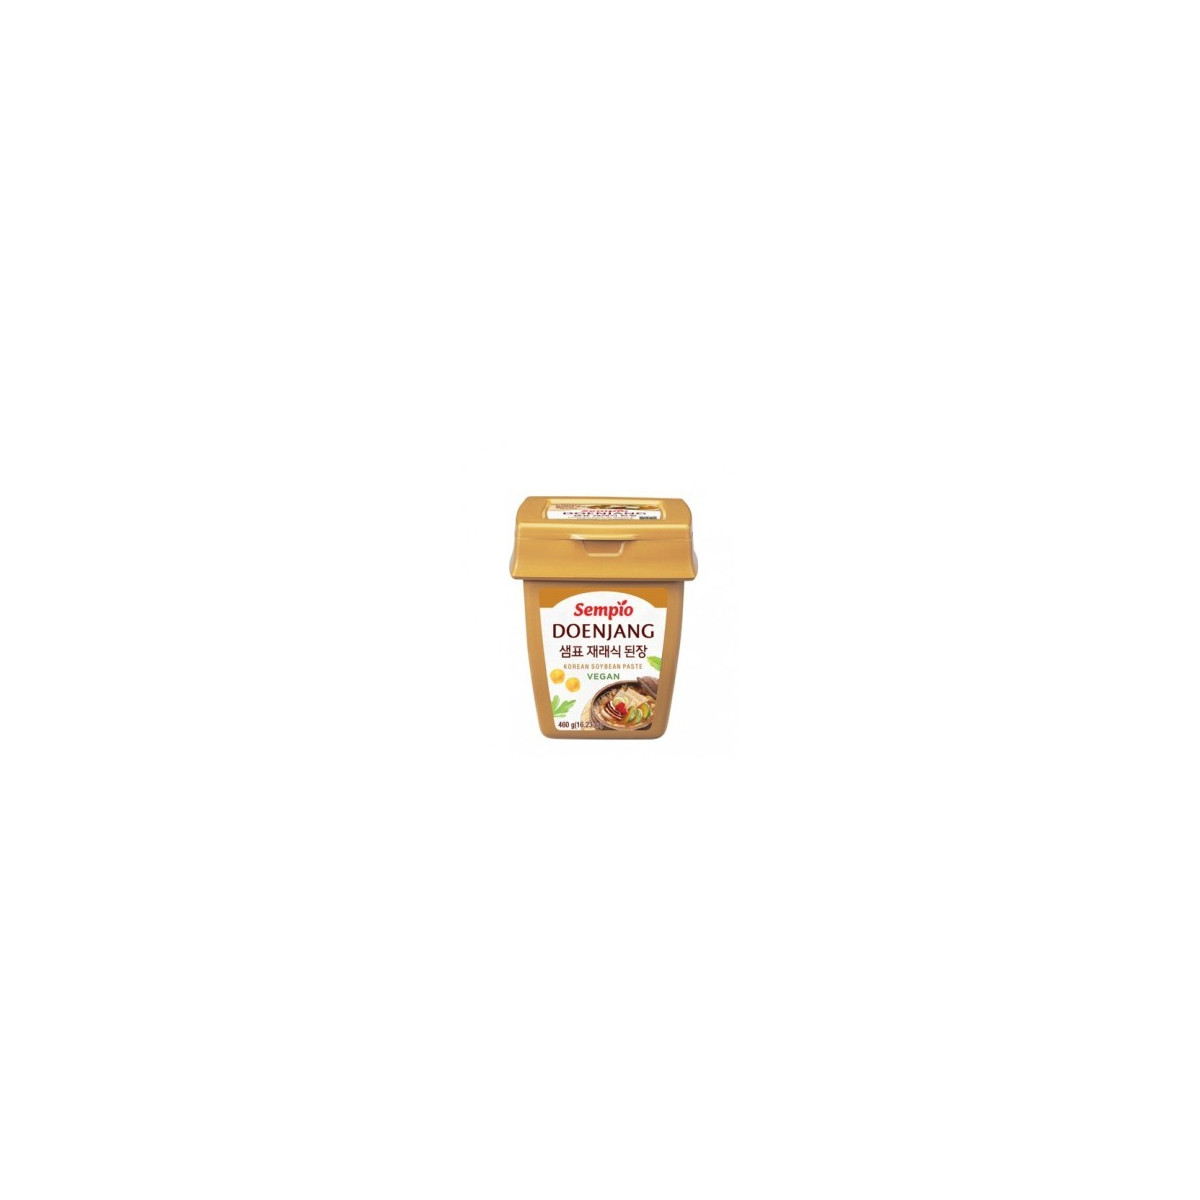 Gochujang Hot Pepper Paste GLUTEN FREE 250g - Sempio